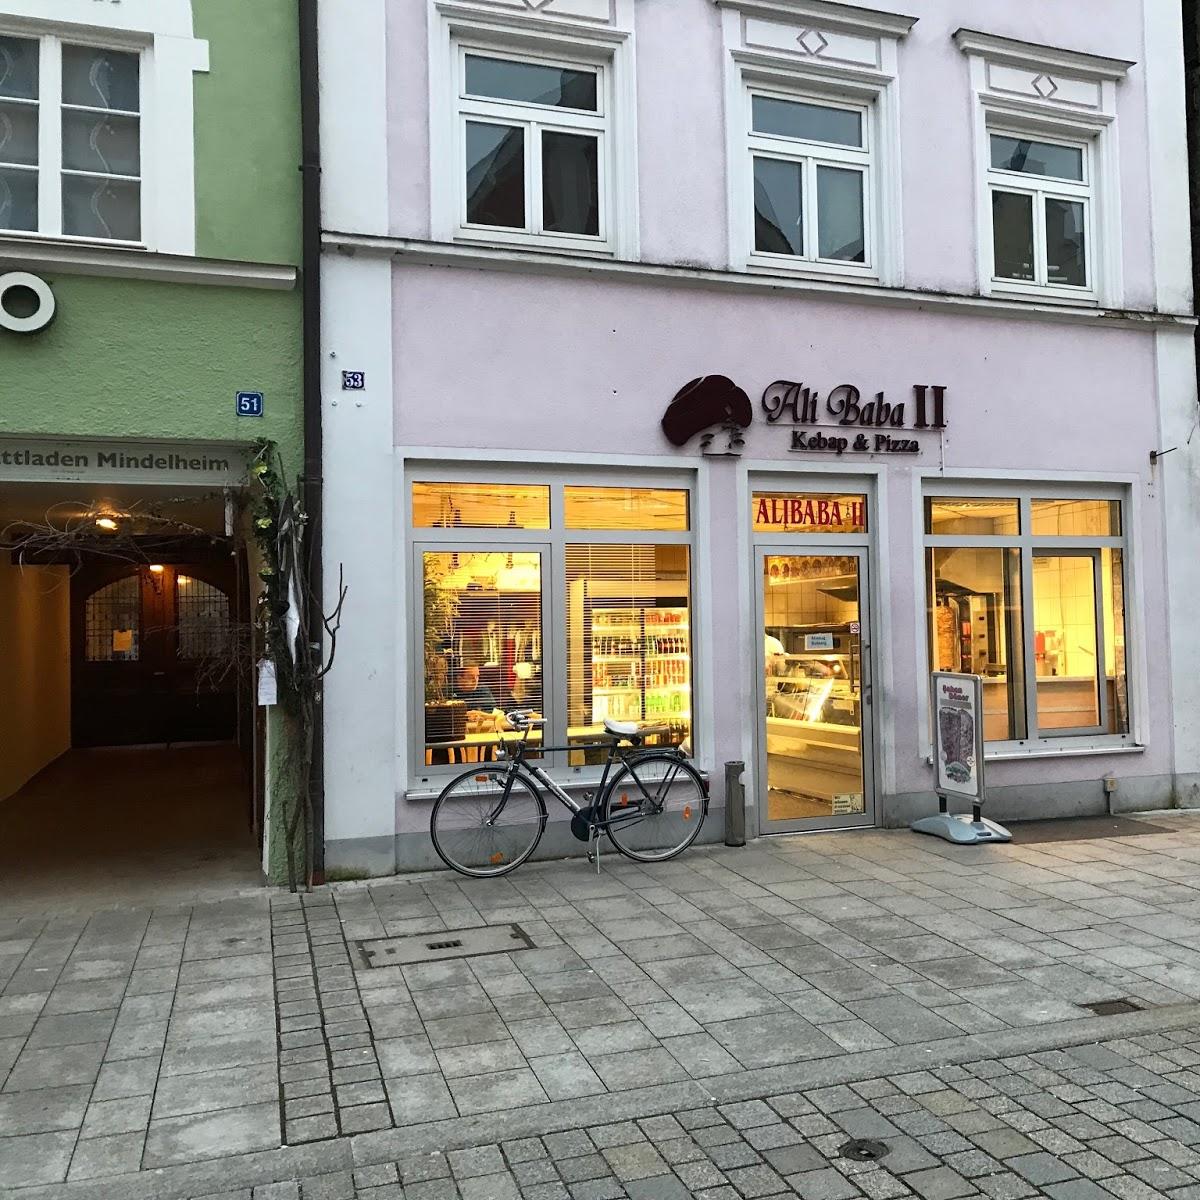 Restaurant "Ali Baba" in Mindelheim